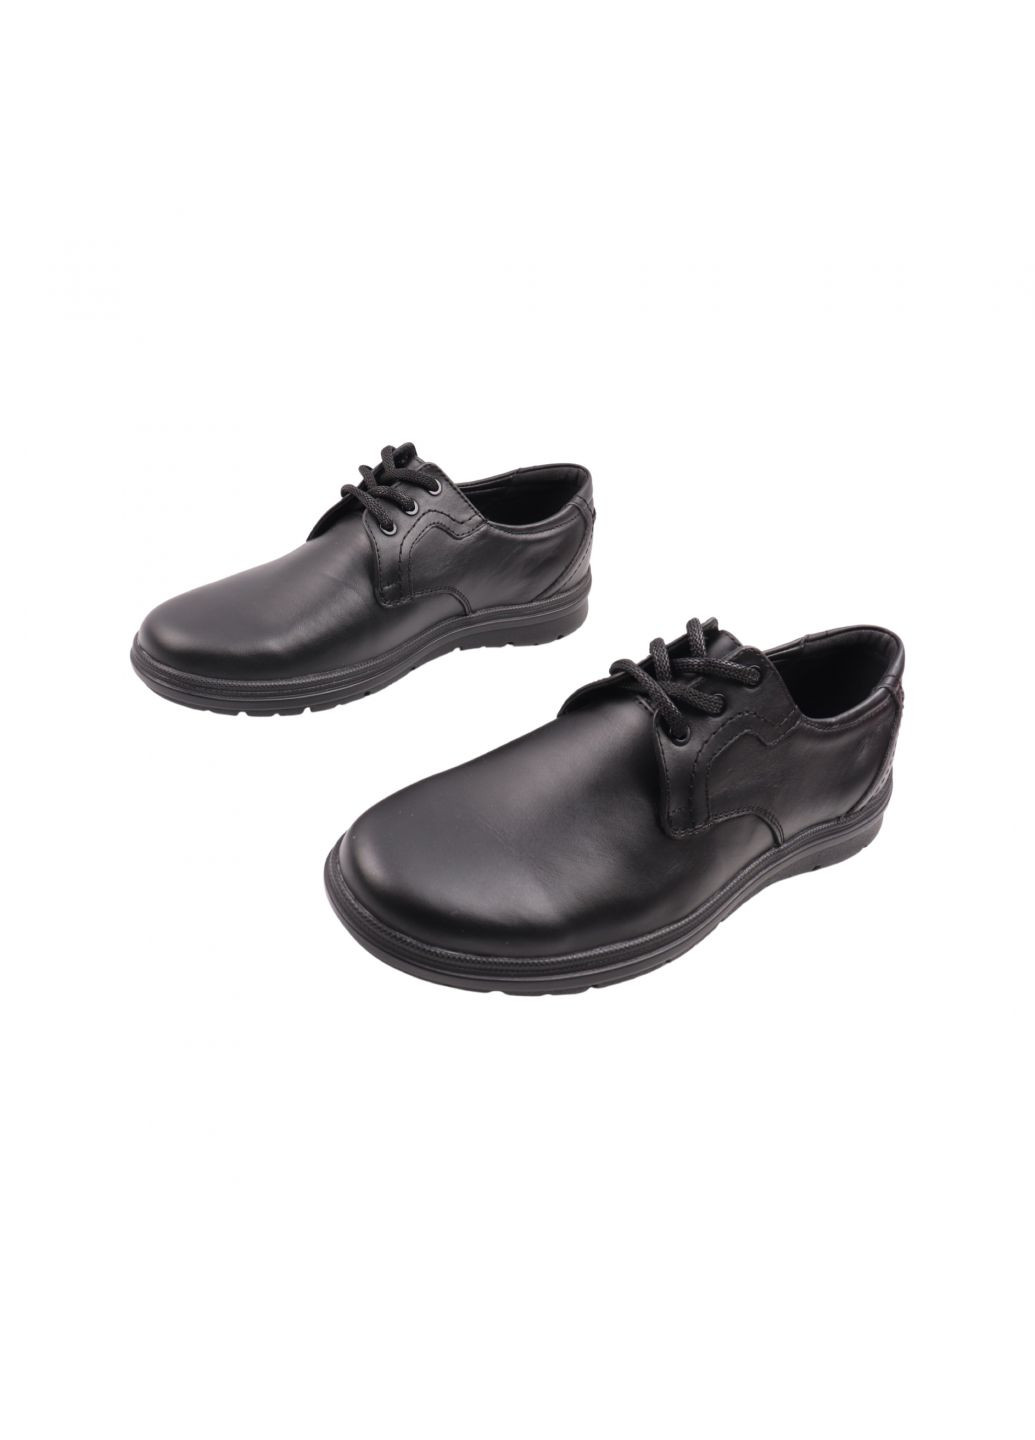 Черные туфли мужские черные натуральная кожа Golovin